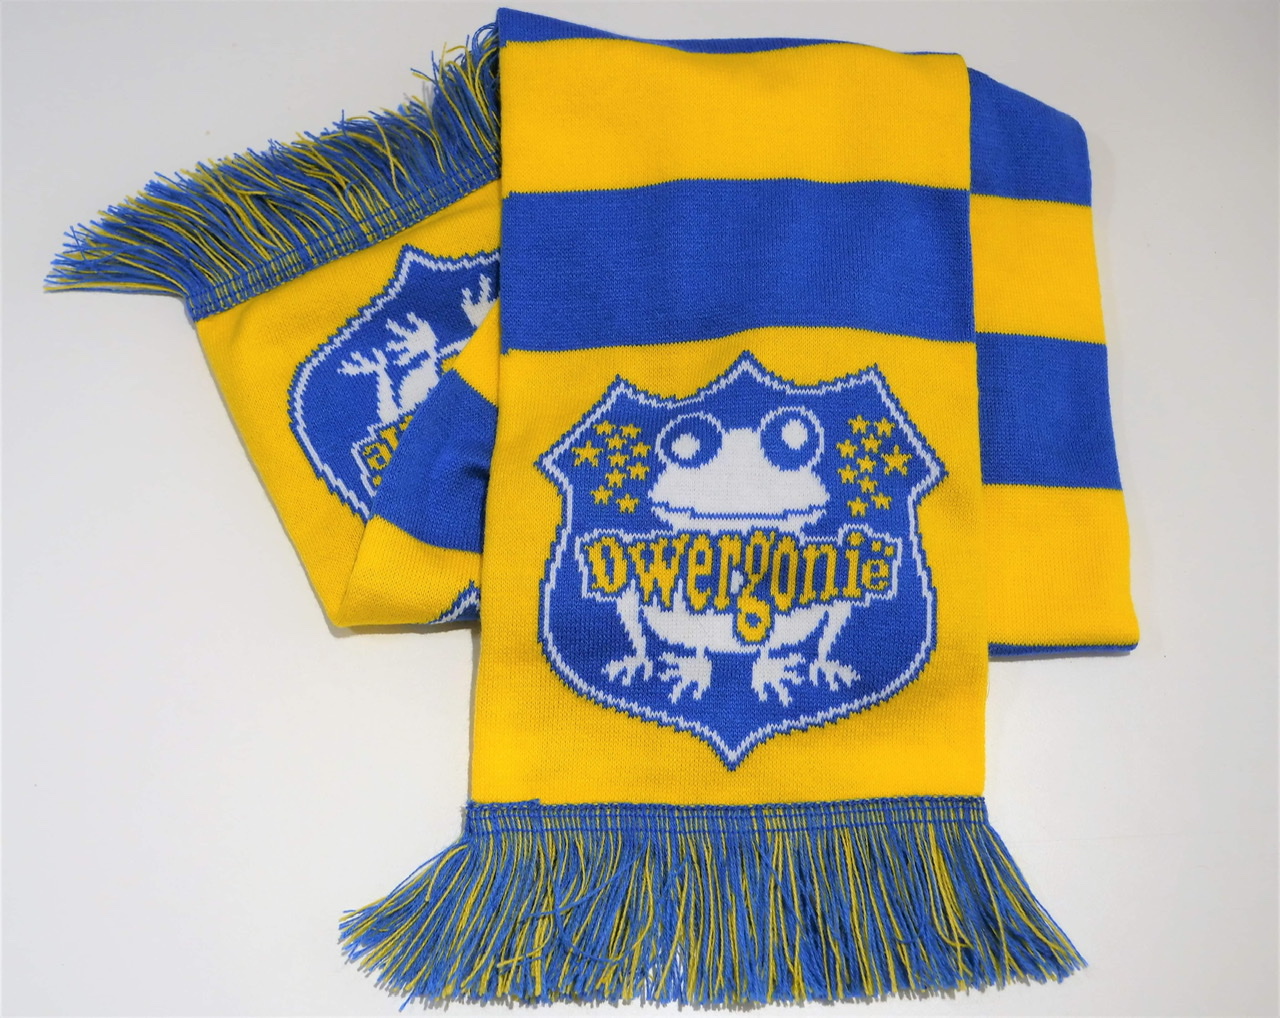 Nieuwe, nog mooiere, sjaals toegevoegd aan de Dwergonische merchandise.